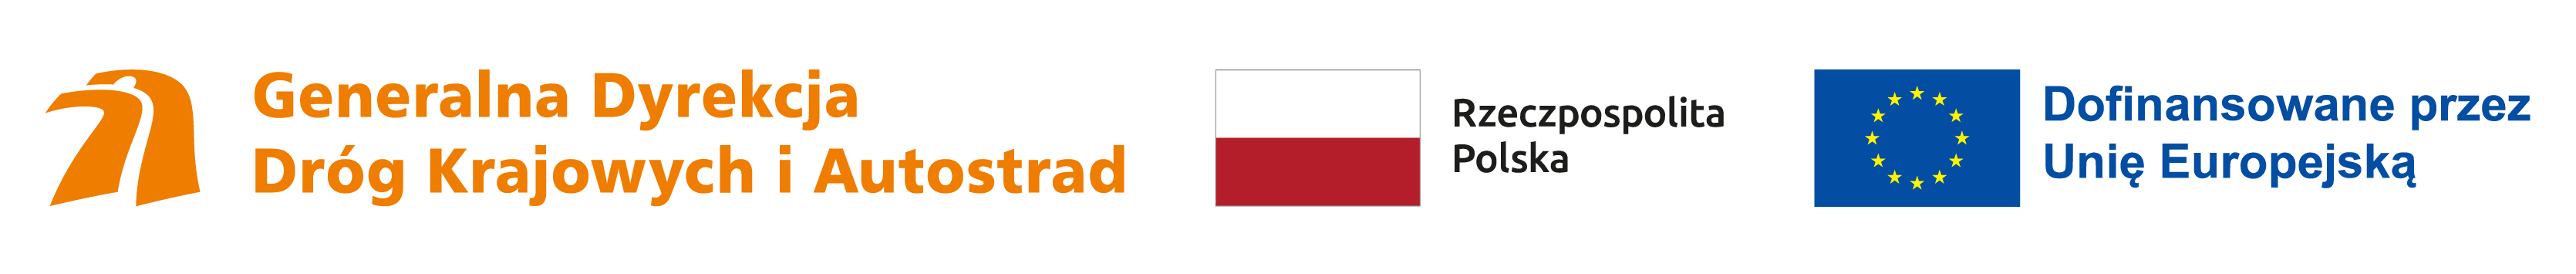 Zestawienie logotypów od lewej: Logotyp GDDKiA - kształt głowy orła stylizowany na dwupasmową drogę, flaga Polski, flaga Unii Europejskiej z dopiskiem Dofinansowane przez Unię Europejską